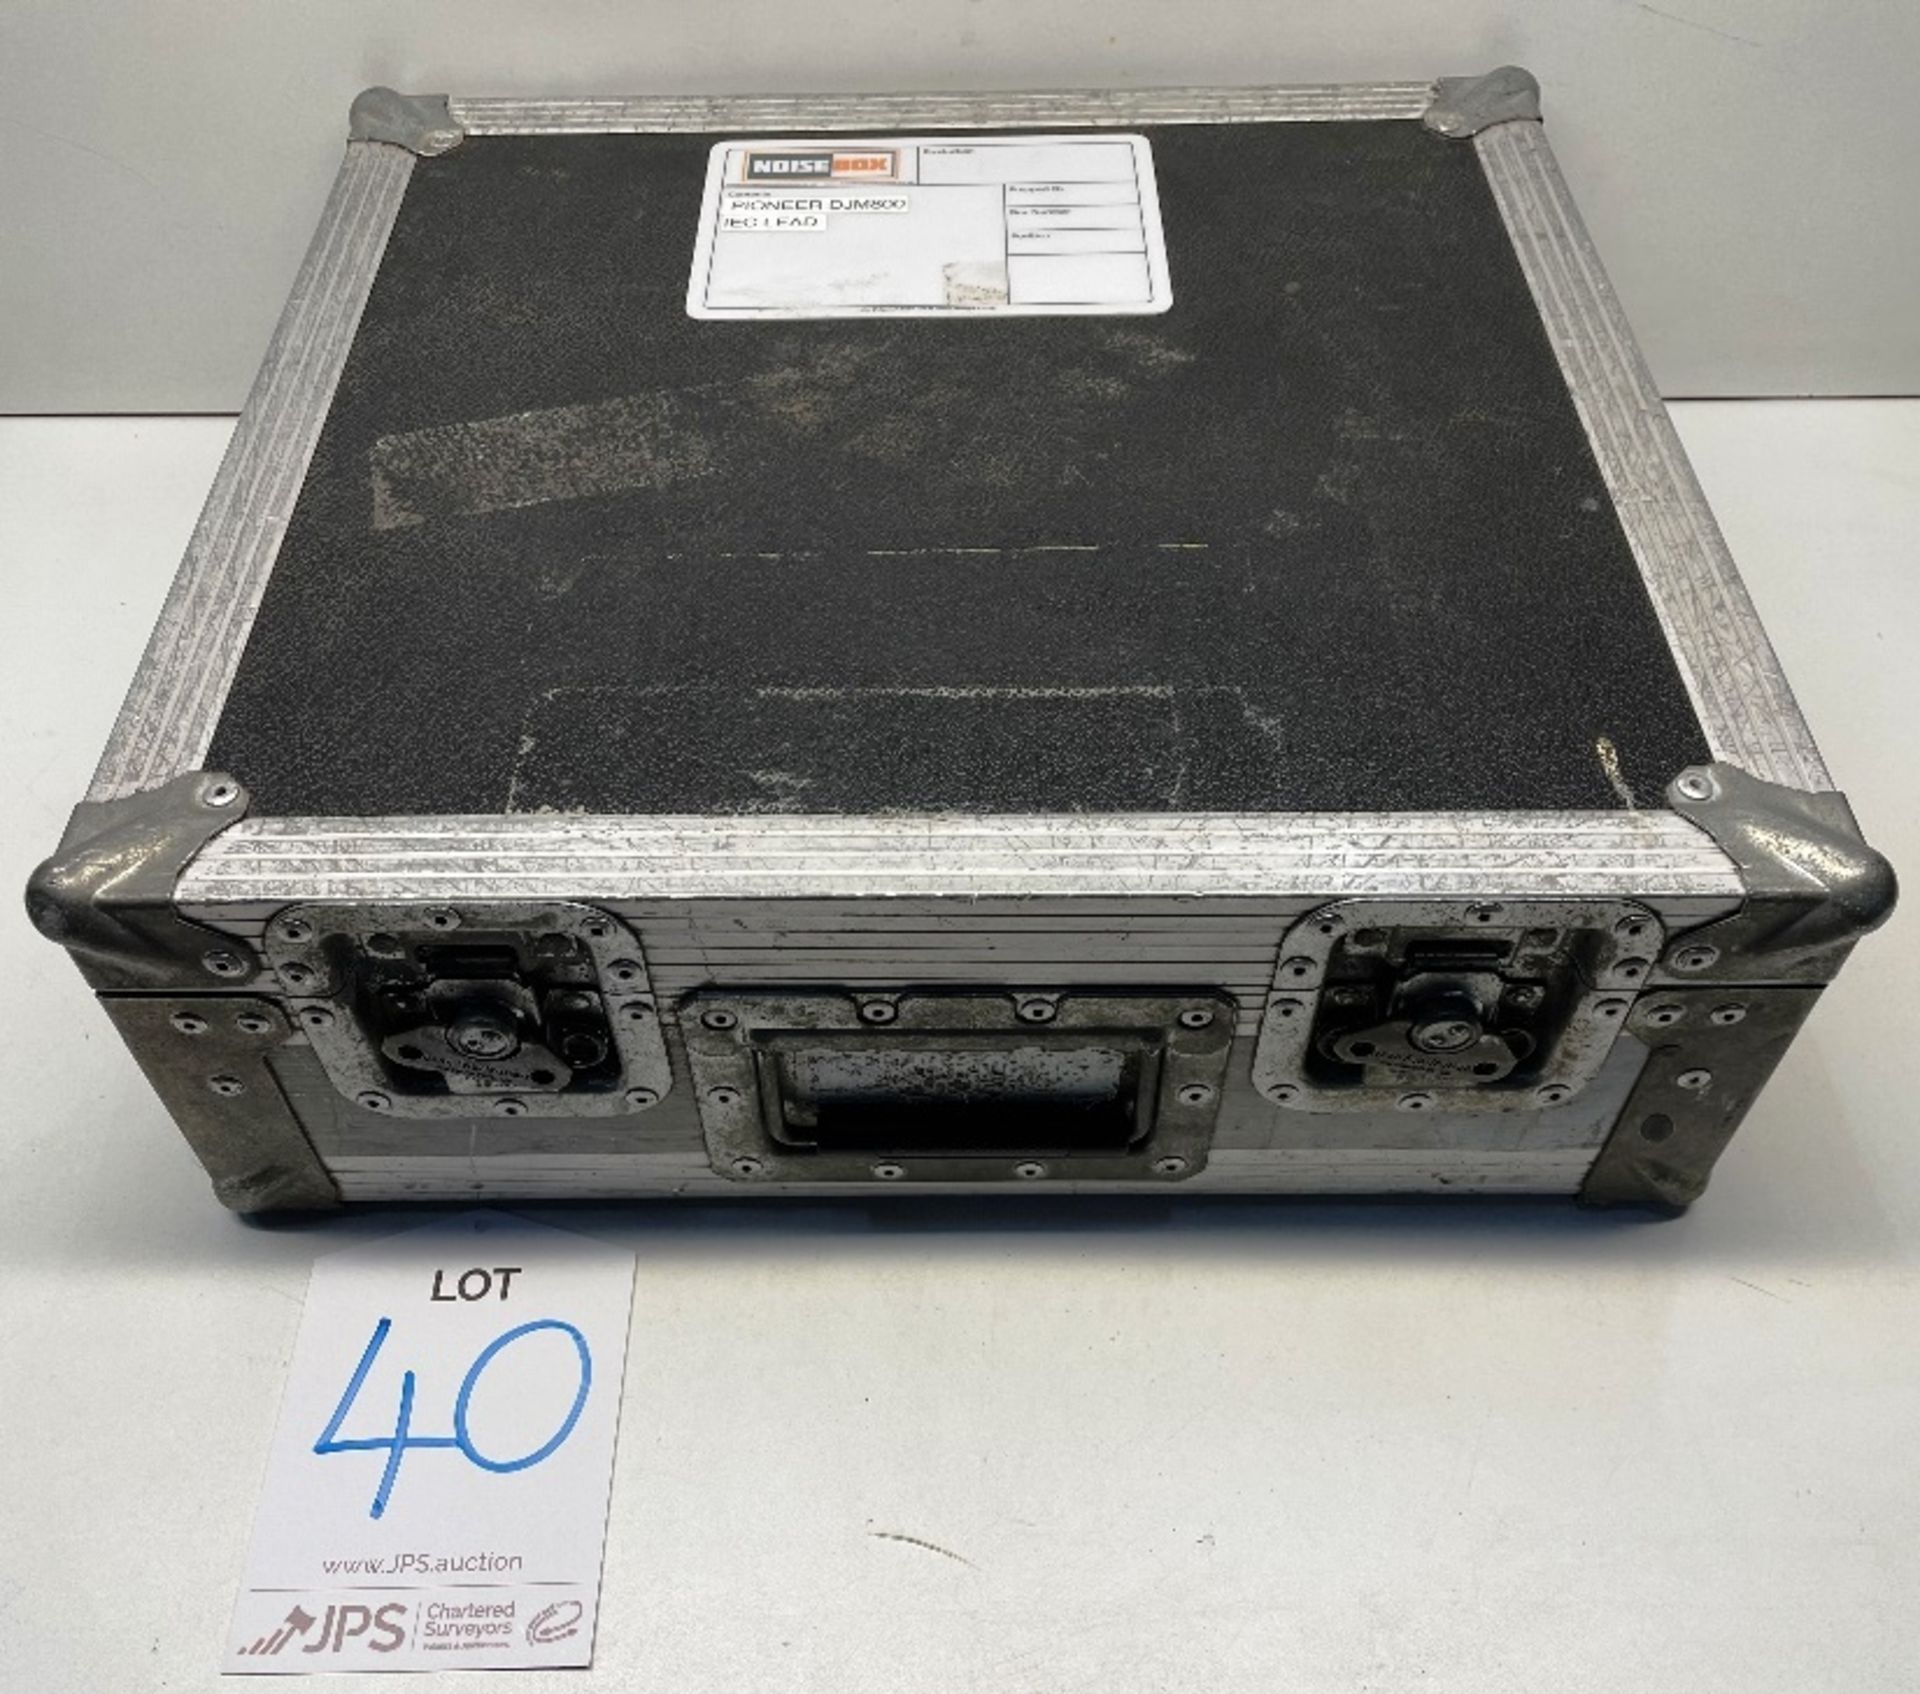 Pioneer DJM-800 4 Channel Digital Mixer w/ Flight Case - Image 2 of 7